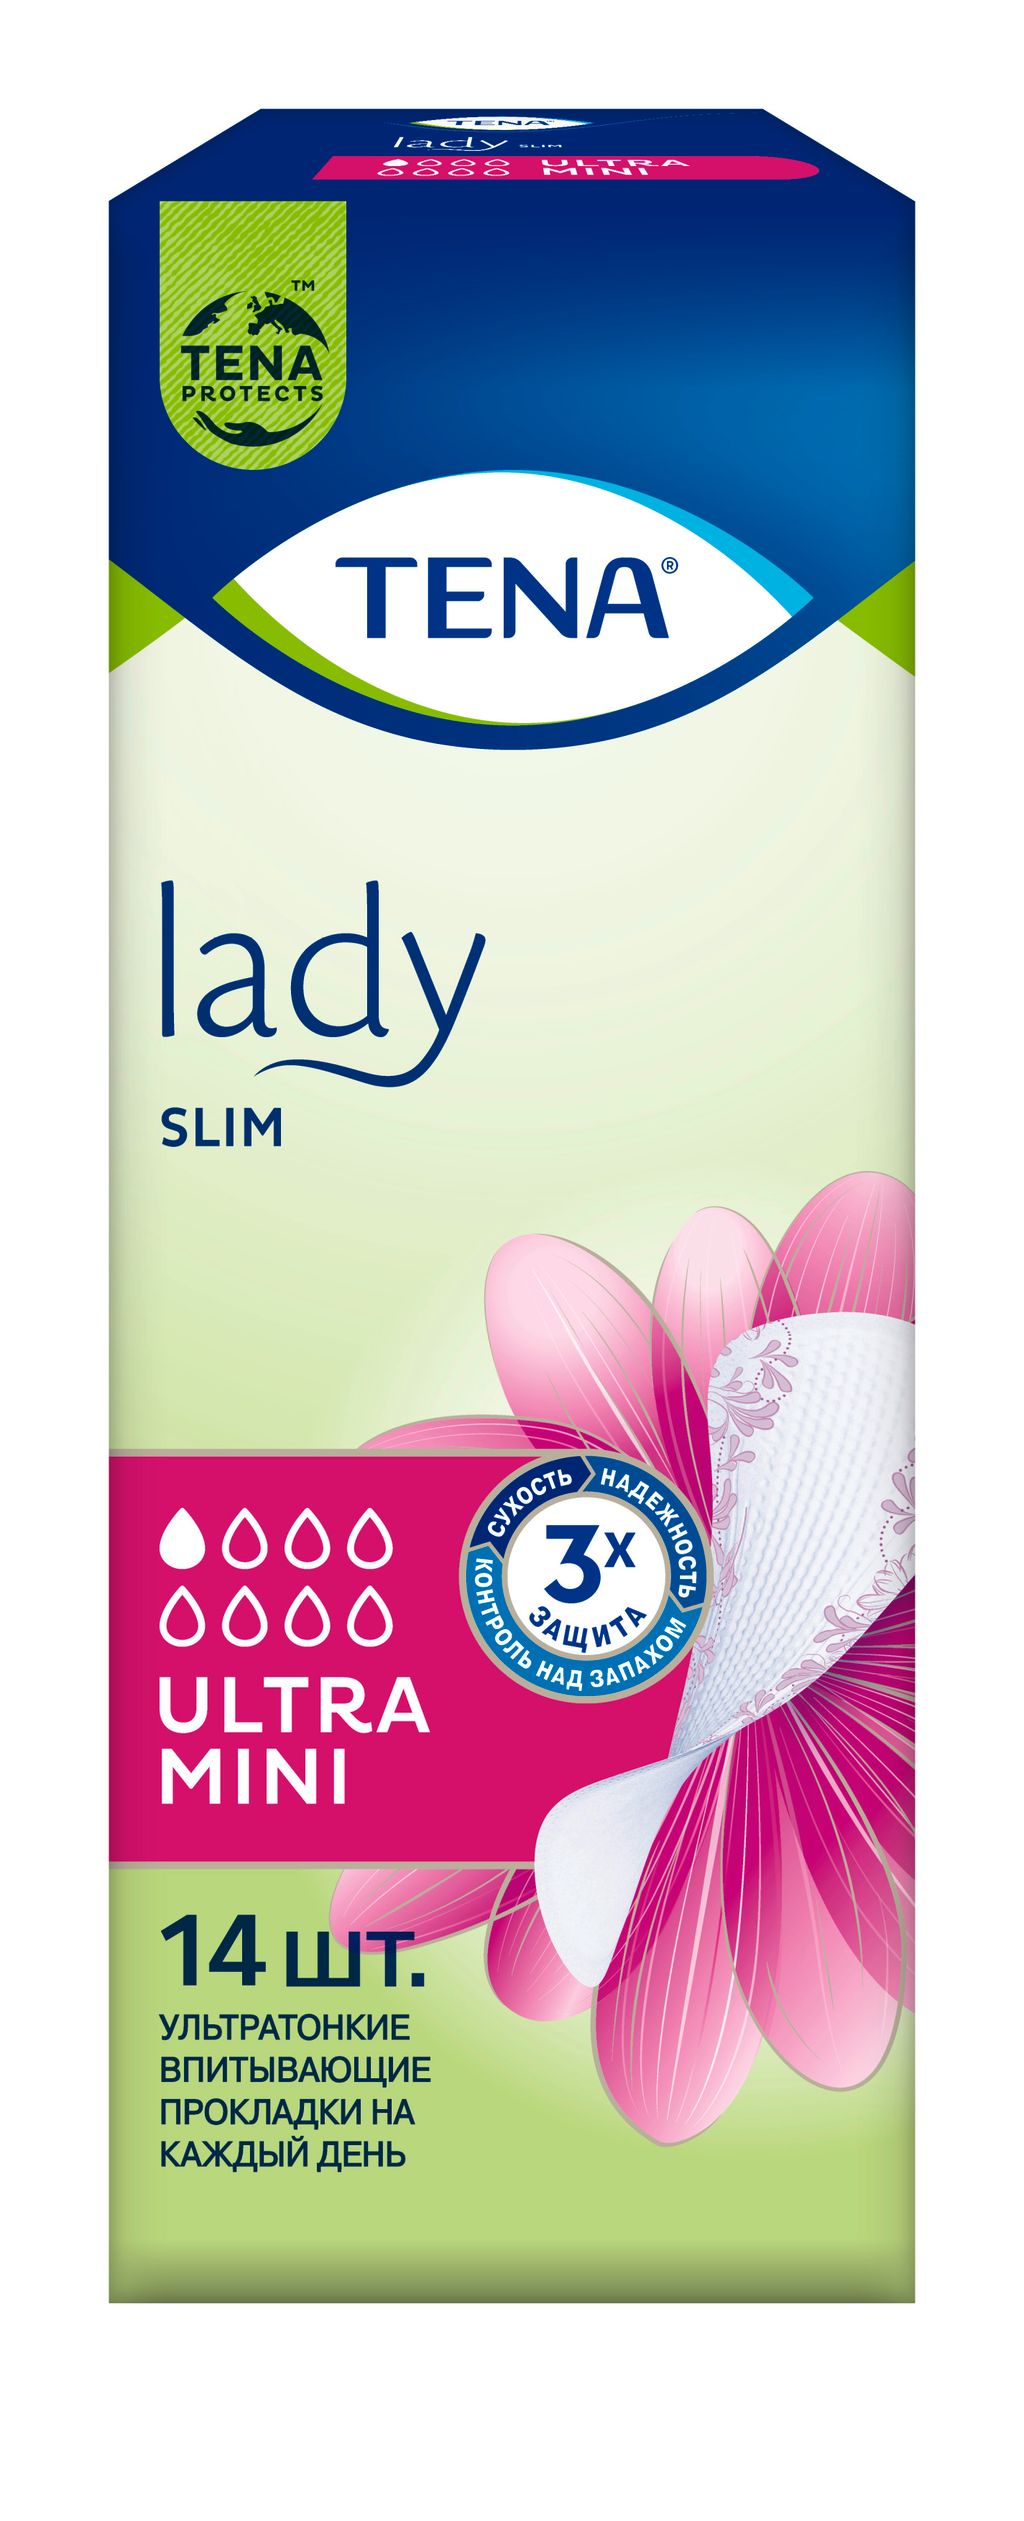 Прокладки урологические Tena Lady Slim Ultra Mini, прокладки урологические, 1 капля, 14 шт.